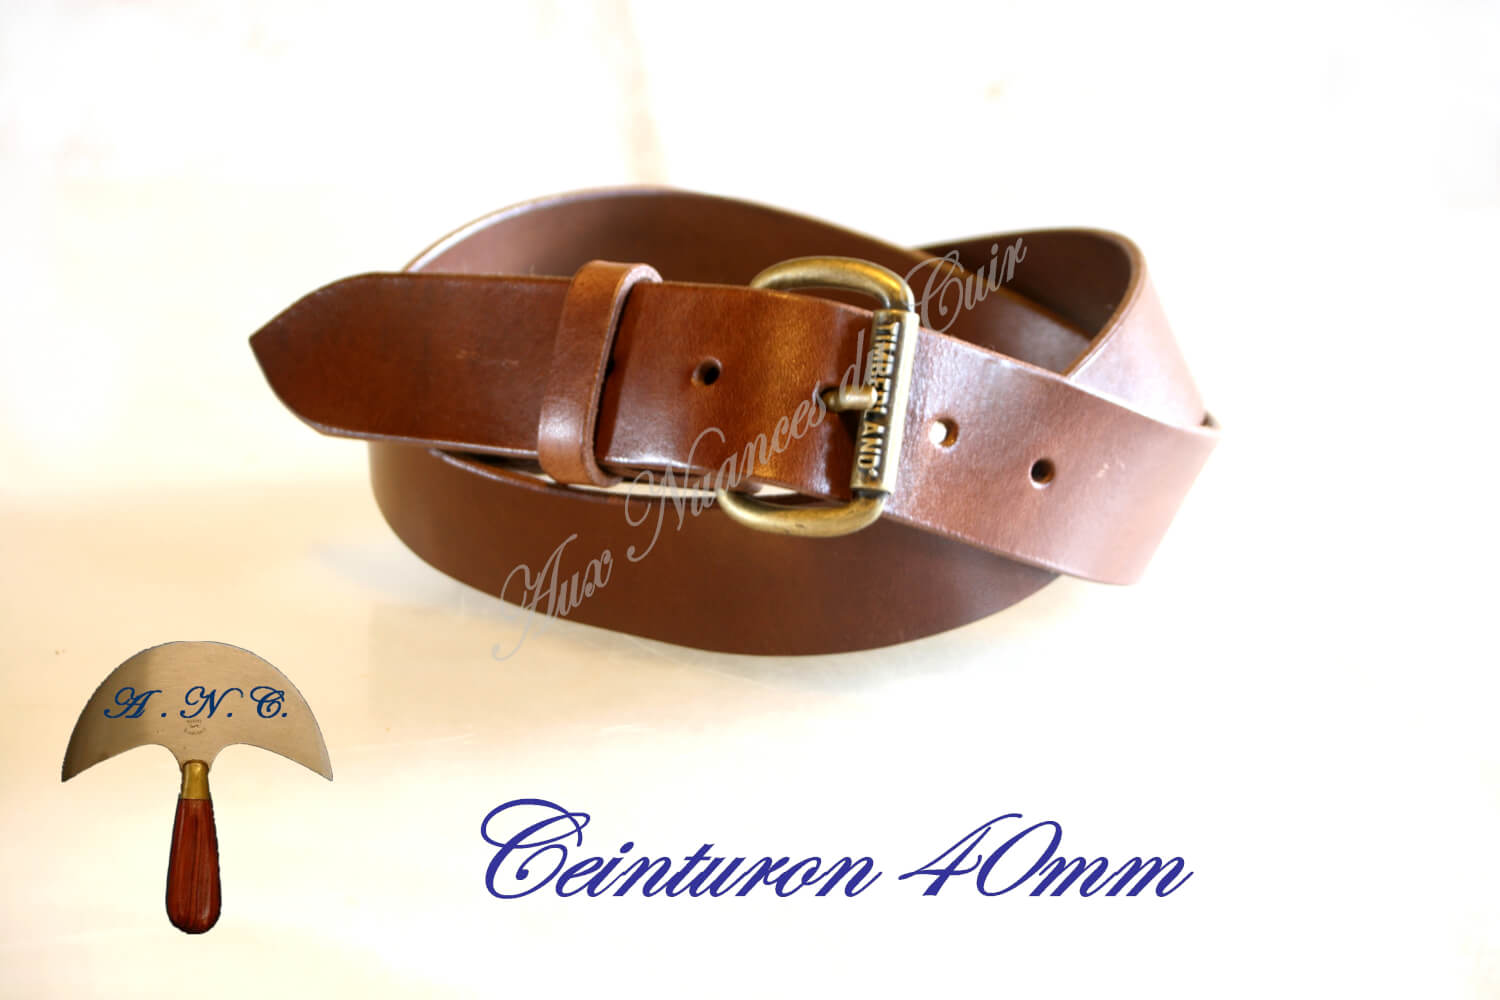 Boucles ceintures cuir ceinturon qualité solide ceinture artisanale